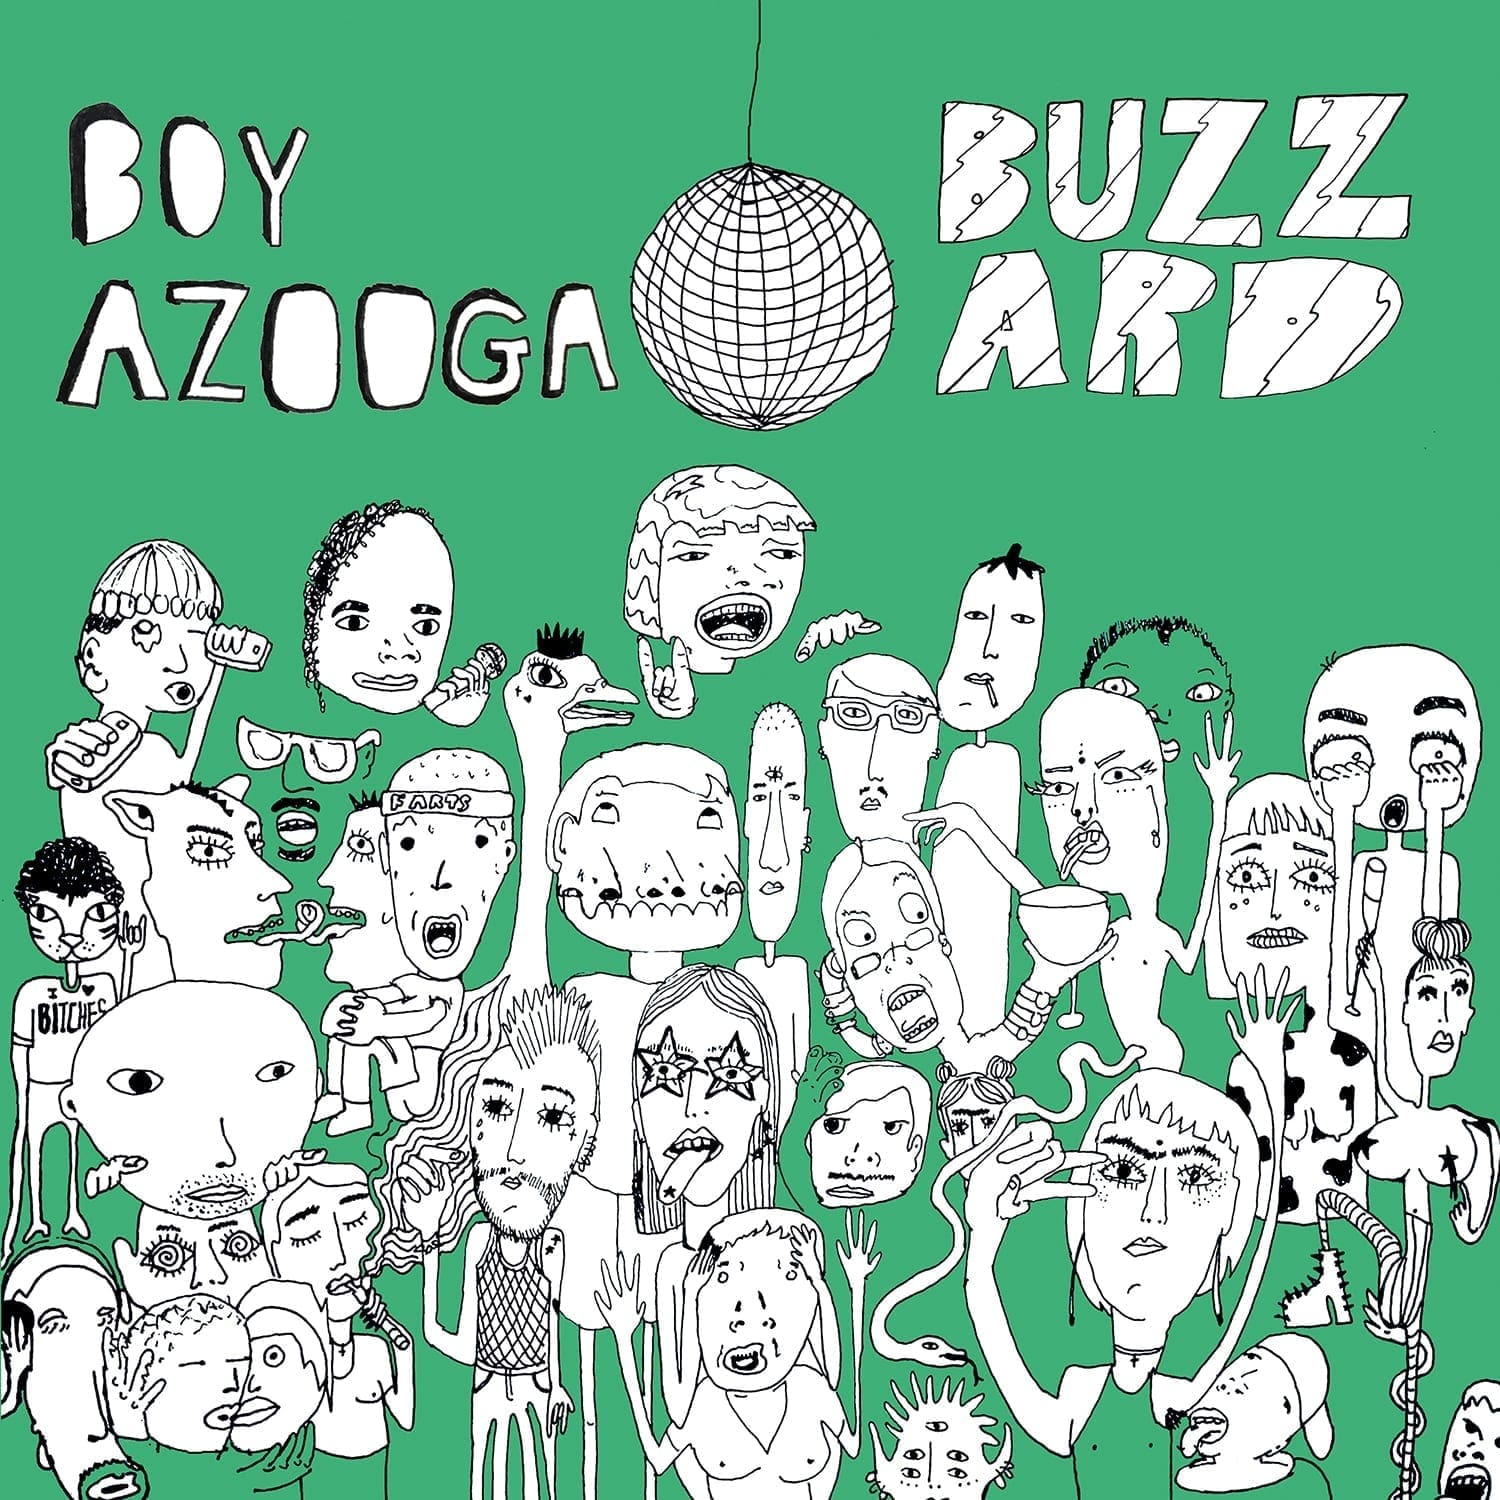 Boy Azooga / Buzzard Buzzard Buzzard – Split 12″